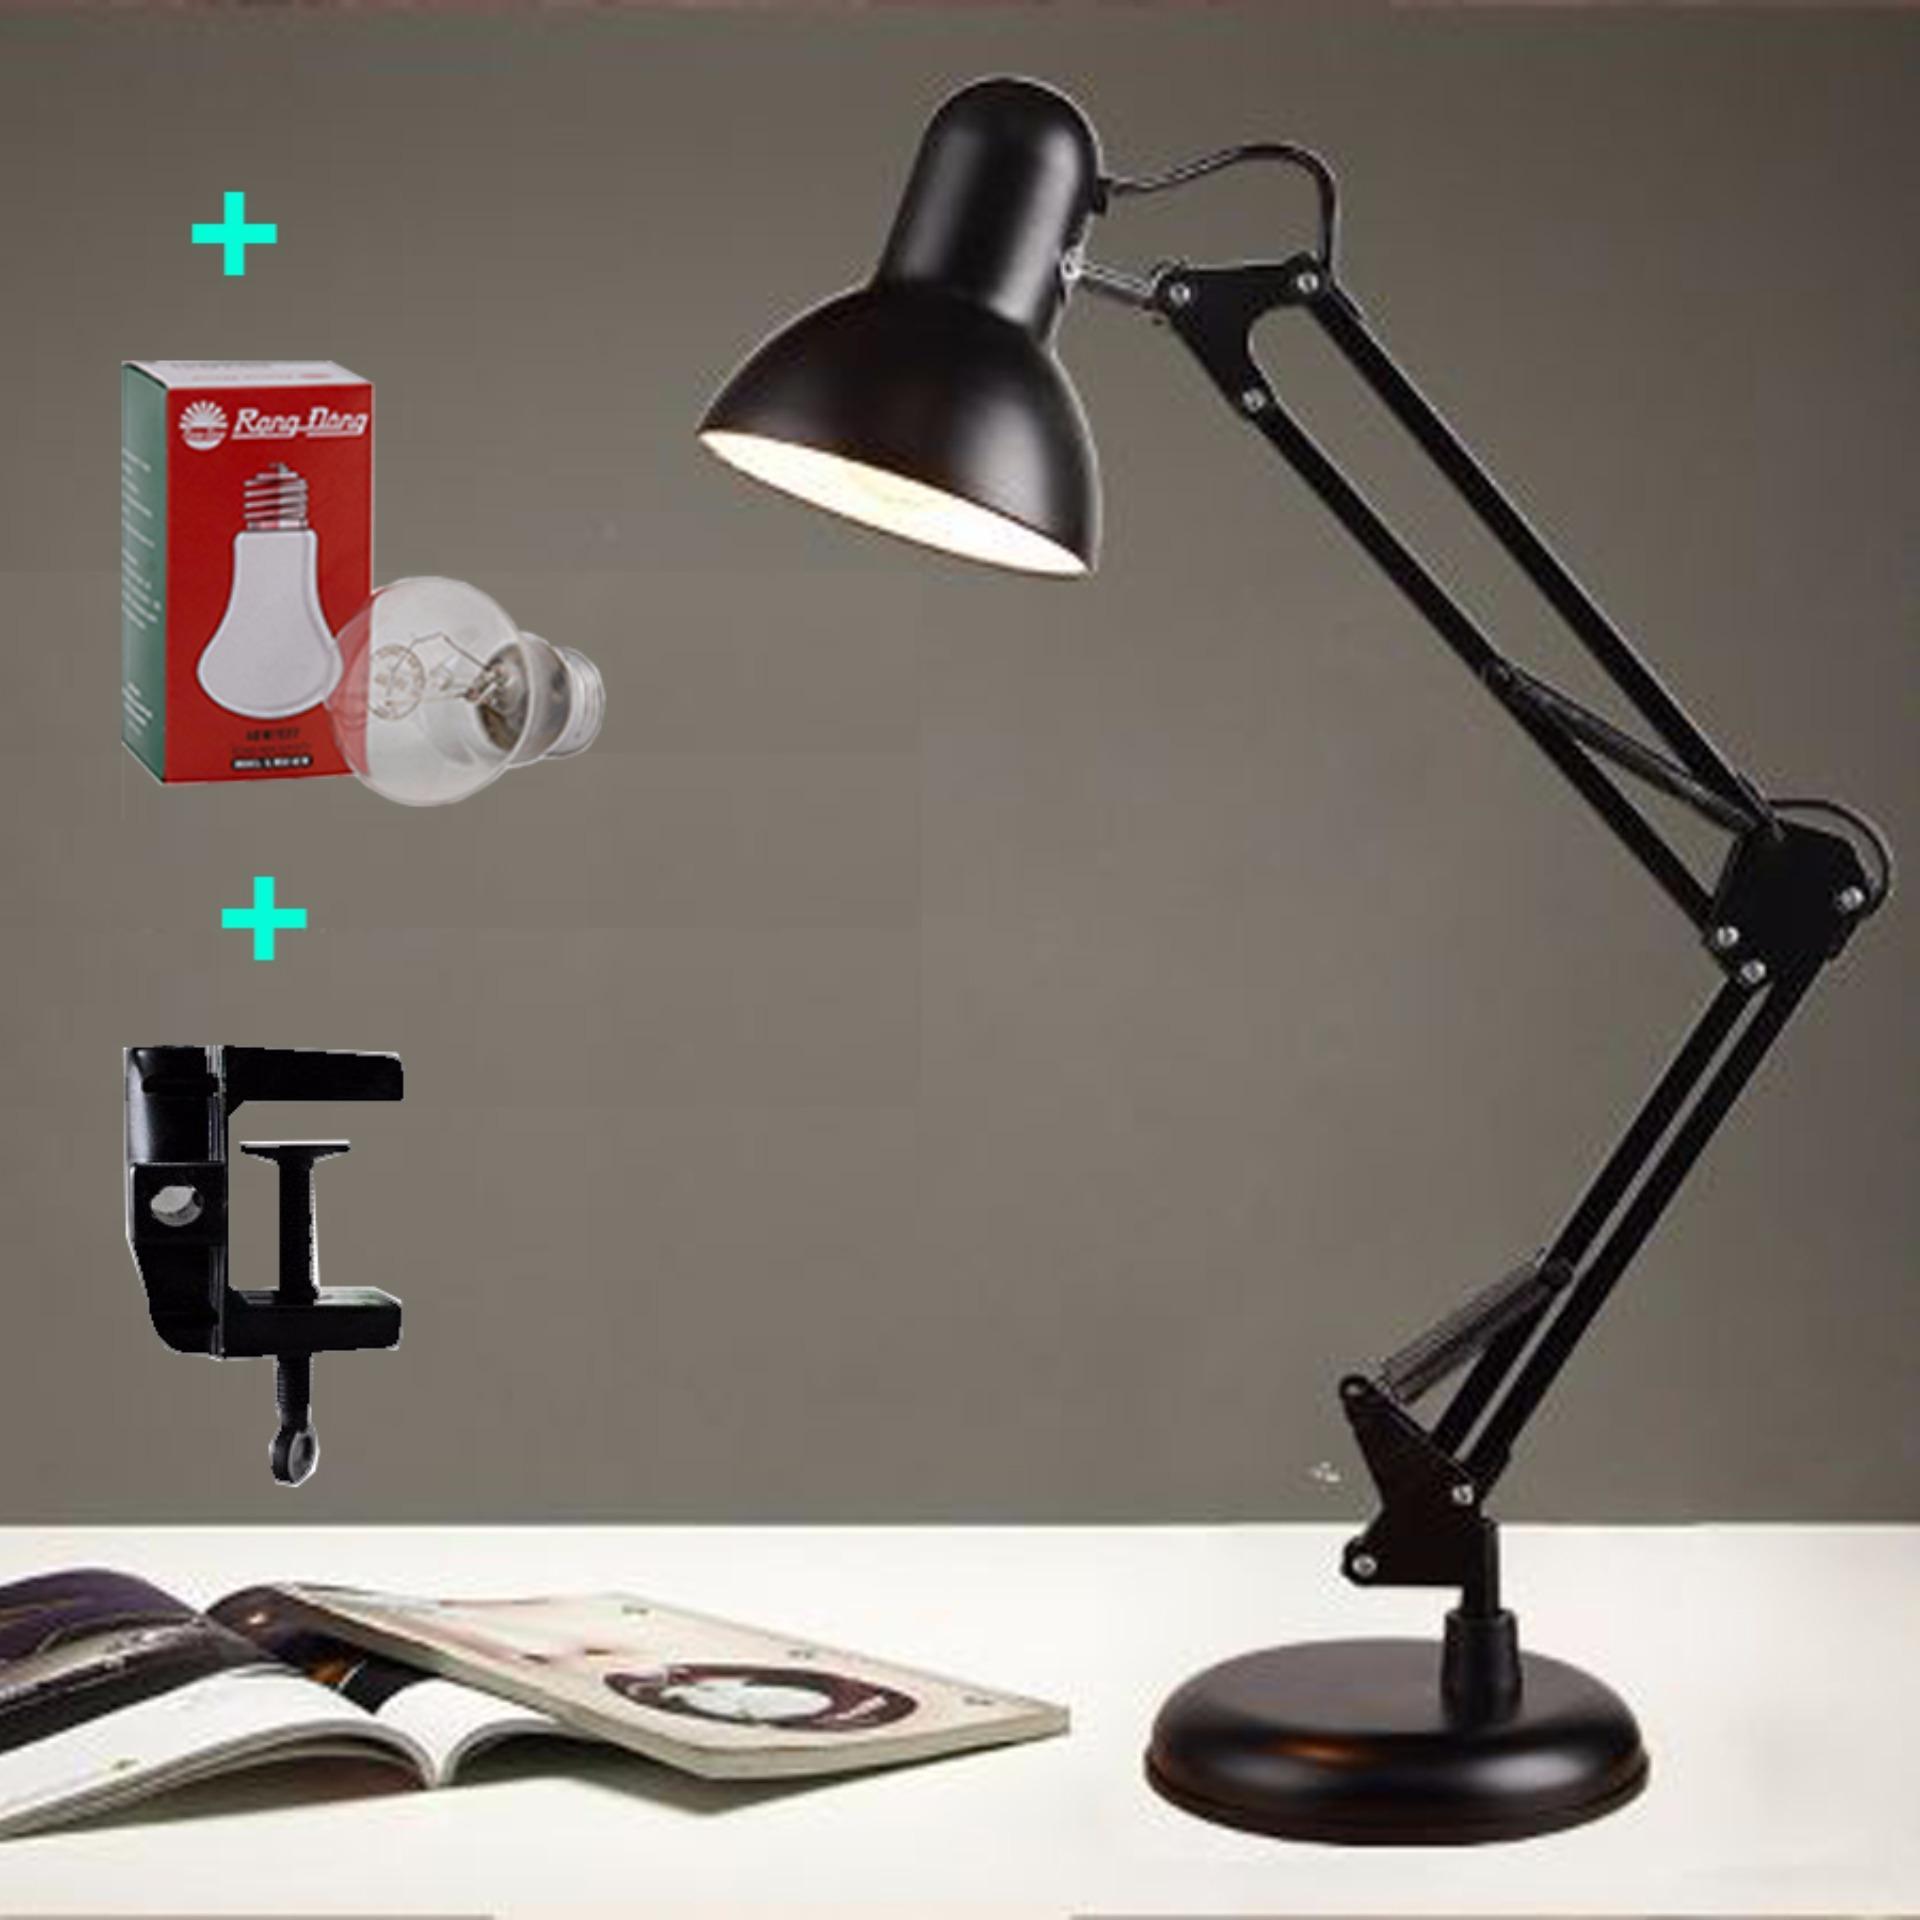 Đèn bàn pixar có đế tự đứng , đèn để bàn, đèn học chống cận kèm bóng và kẹp bàn...